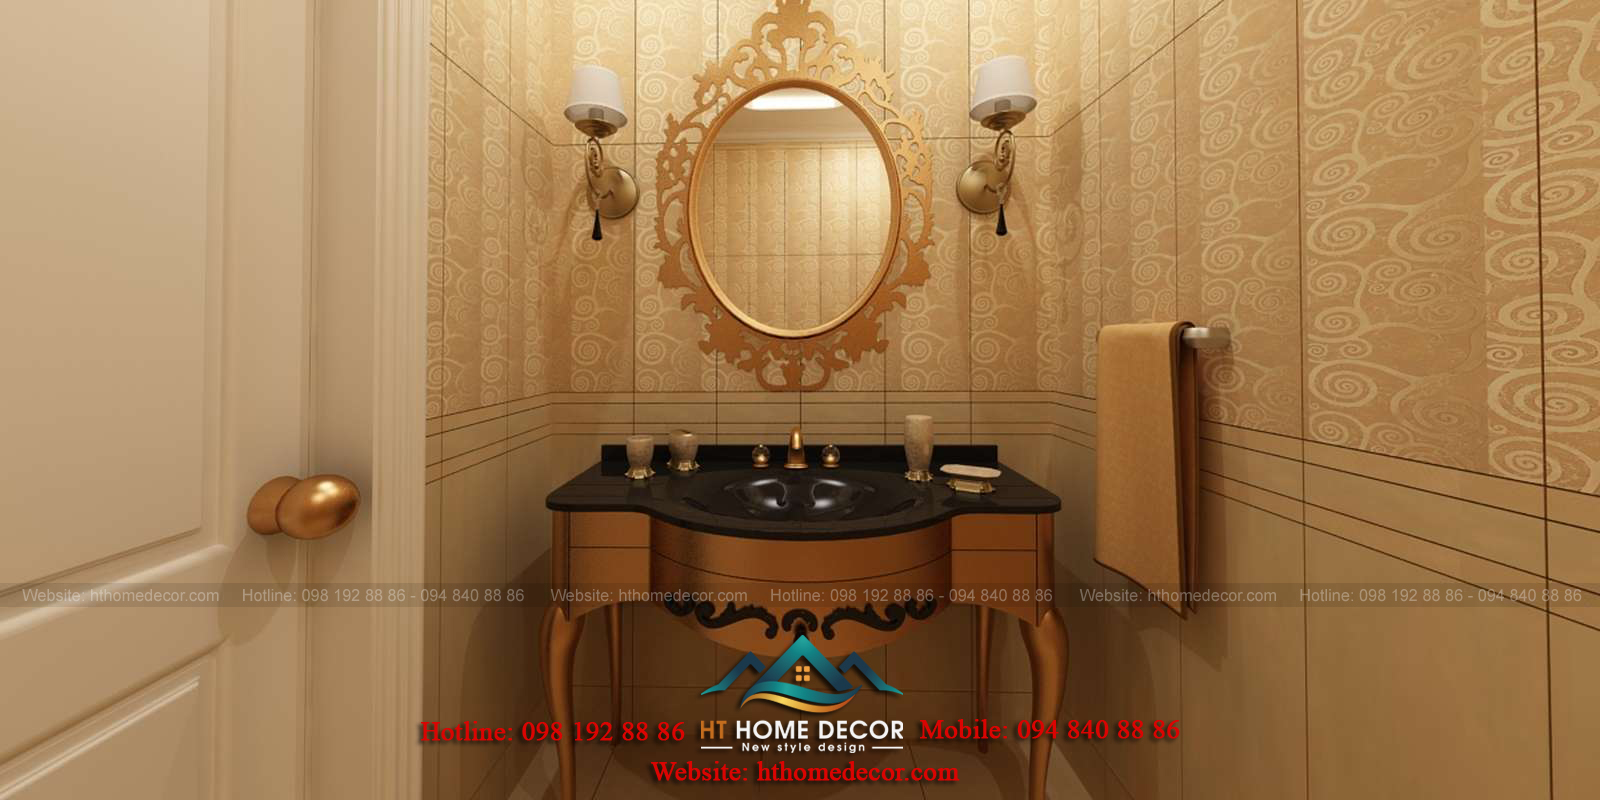 Gương lớn và tủ đa năng mạ vàng đẹp mắt. Gương được thiết kế phong cách cổ xưa.